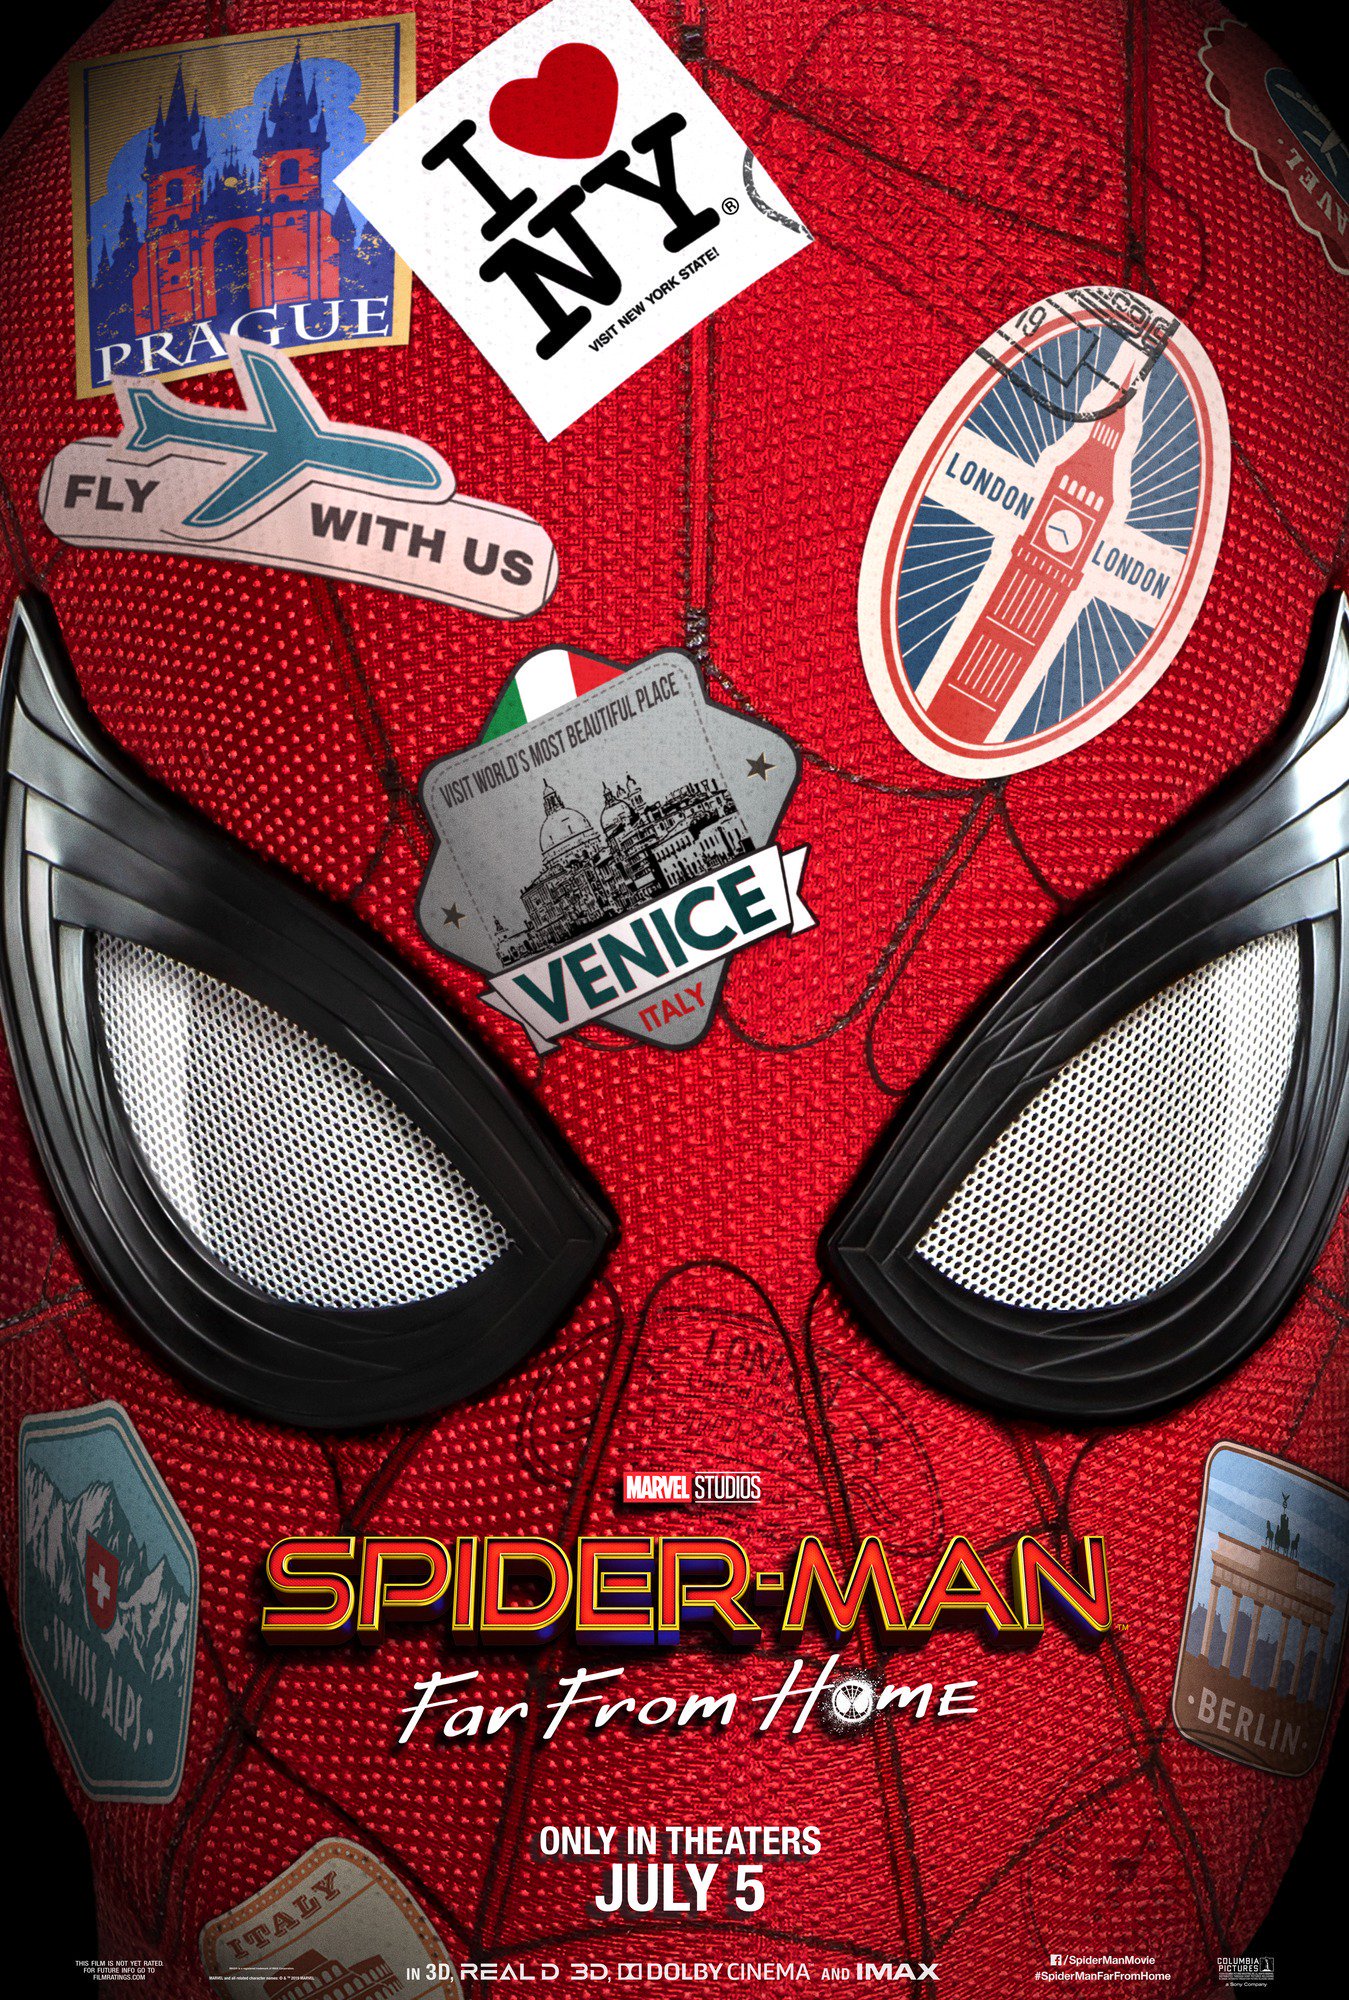 spider man premiere tickets